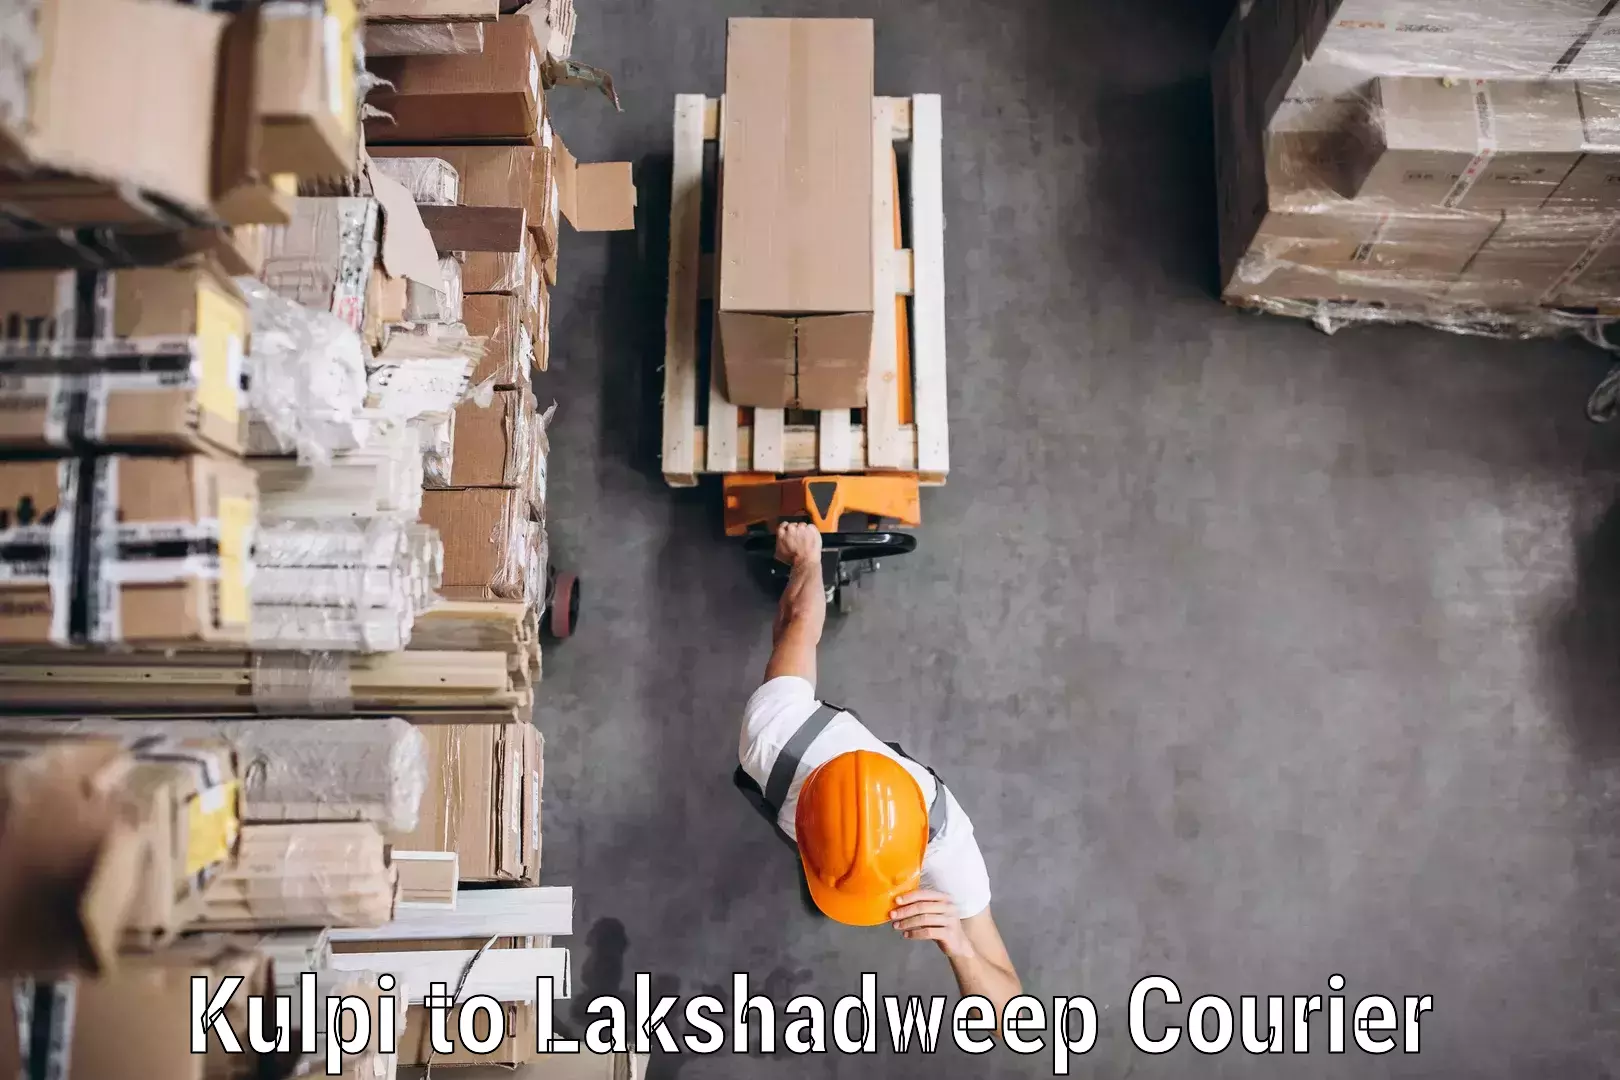 Customer-centric shipping Kulpi to Lakshadweep